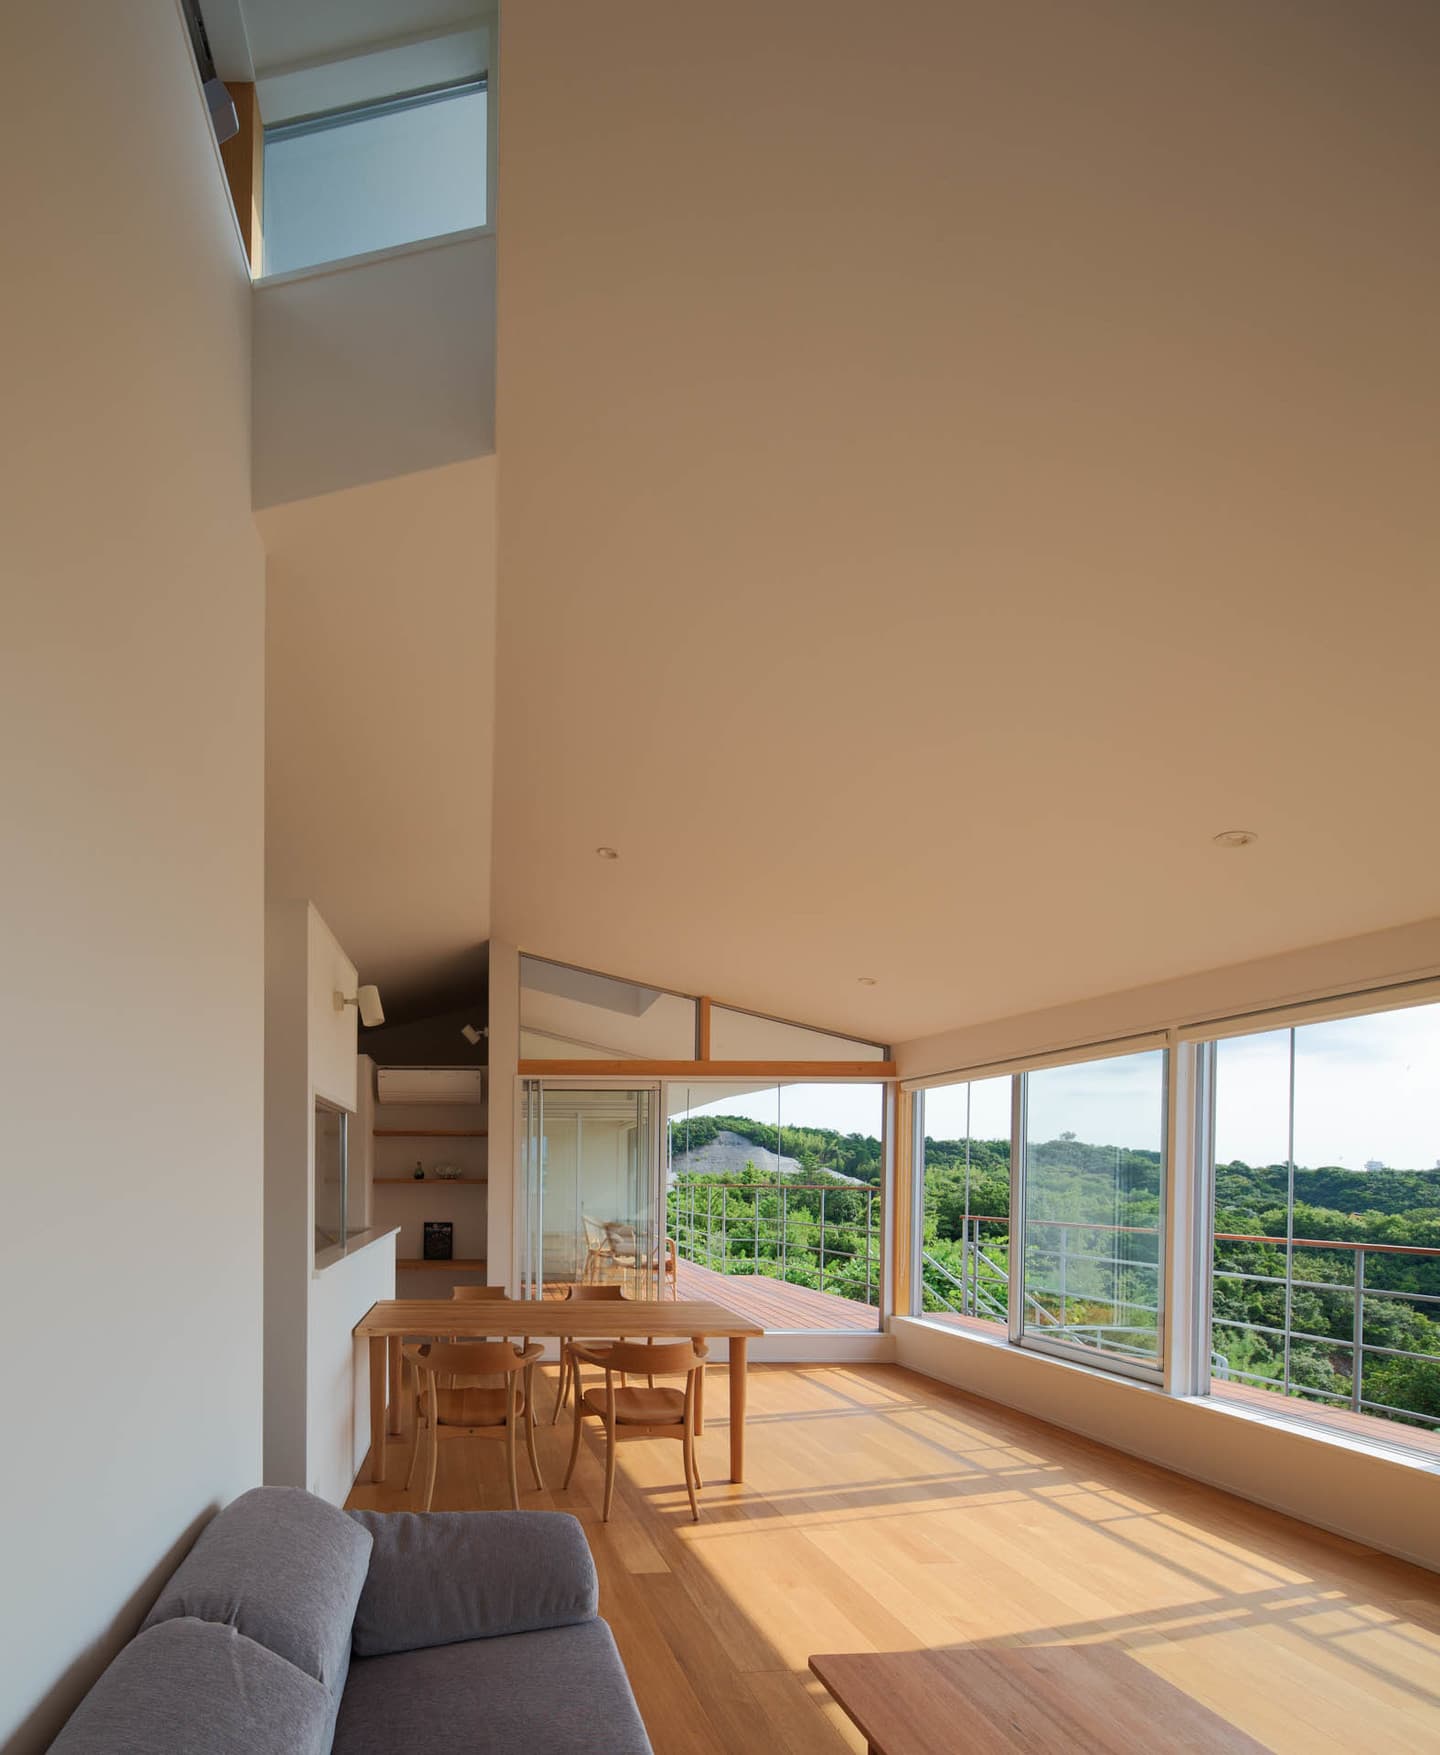 大阪の建築家・中平勝が設計した眺めが良い住宅